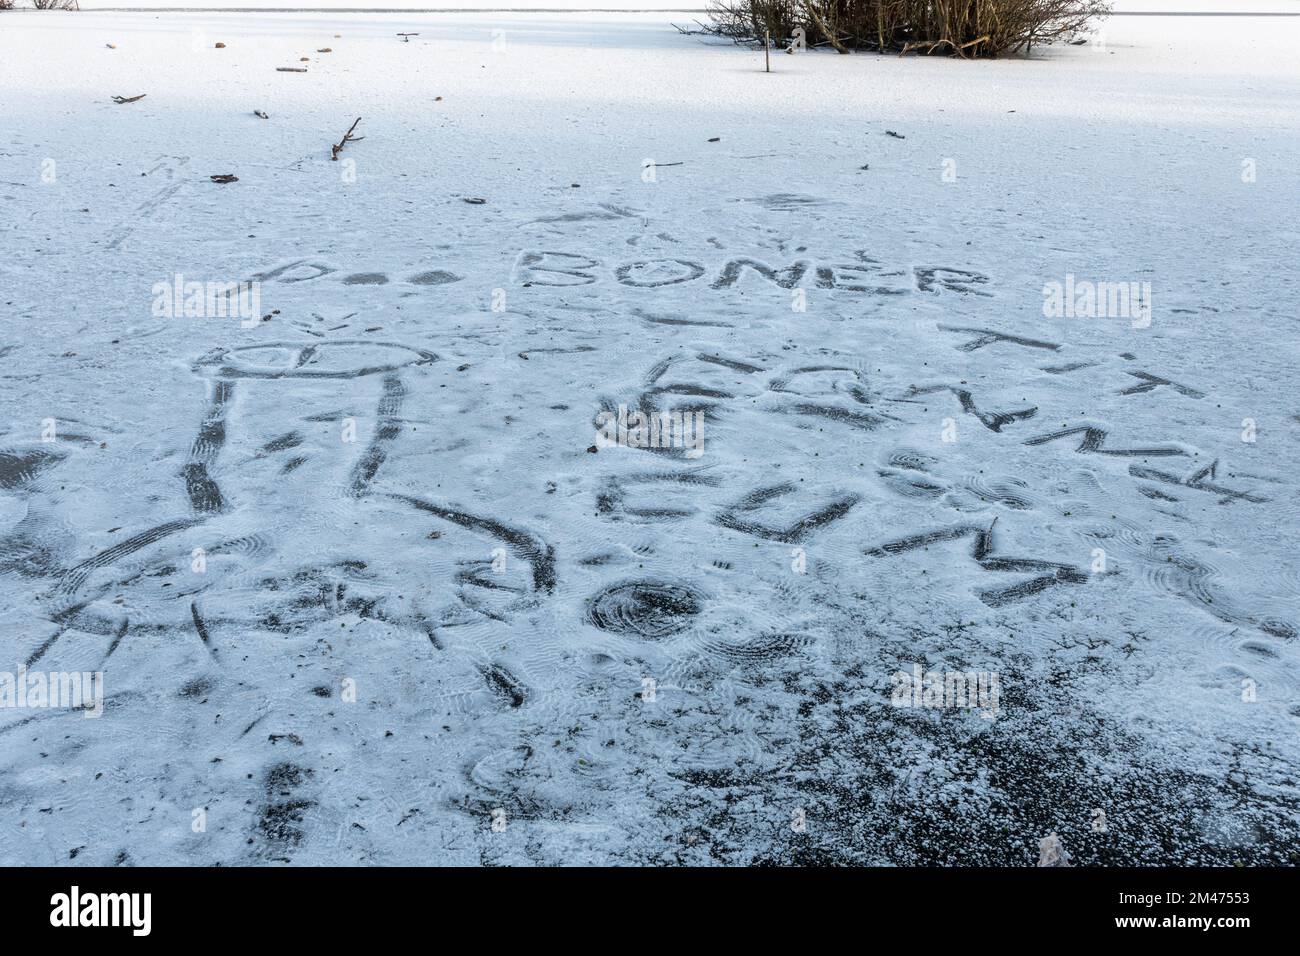 Gefrorener Teich mit unhöflichen Worten und Bildern, die zeigen, dass einige Menschen nicht auf Warnungen vor der Gefahr achten, auf gefrorenen Seen zu laufen, Großbritannien, Dezember 2022 Stockfoto